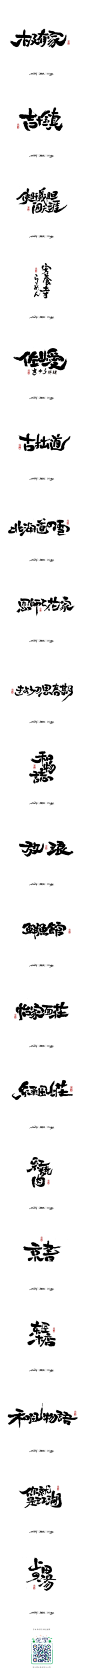 八月字迹 / 日式手写-字体传奇网-中国首个字体品牌设计师交流网